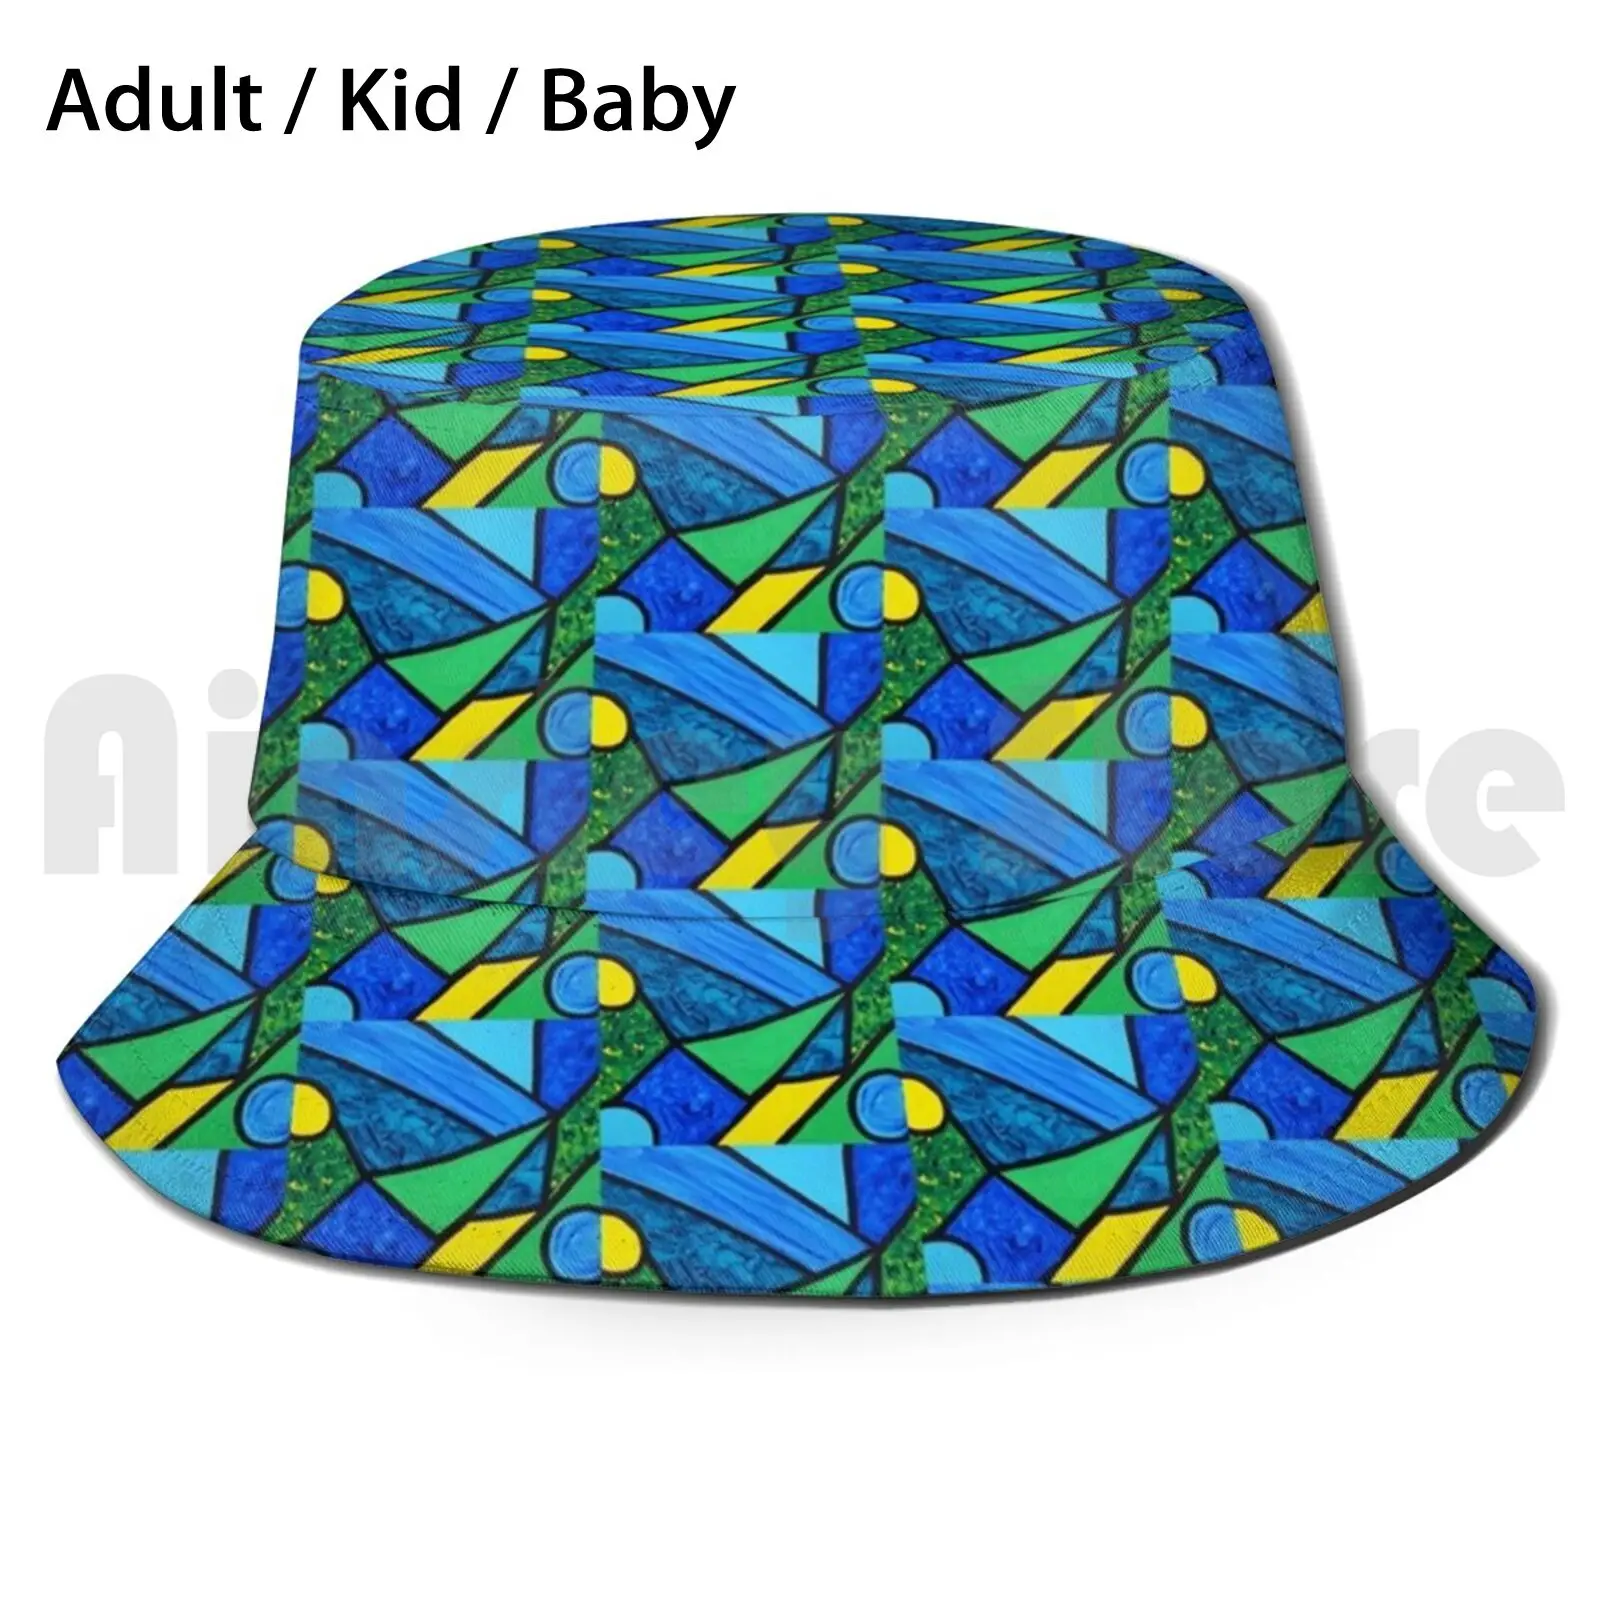 

Солнцезащитная шляпа Blue Zone, складная треугольная форма с абстрактным современным узором и защитой от ультрафиолета, синяя, зеленая, желтая